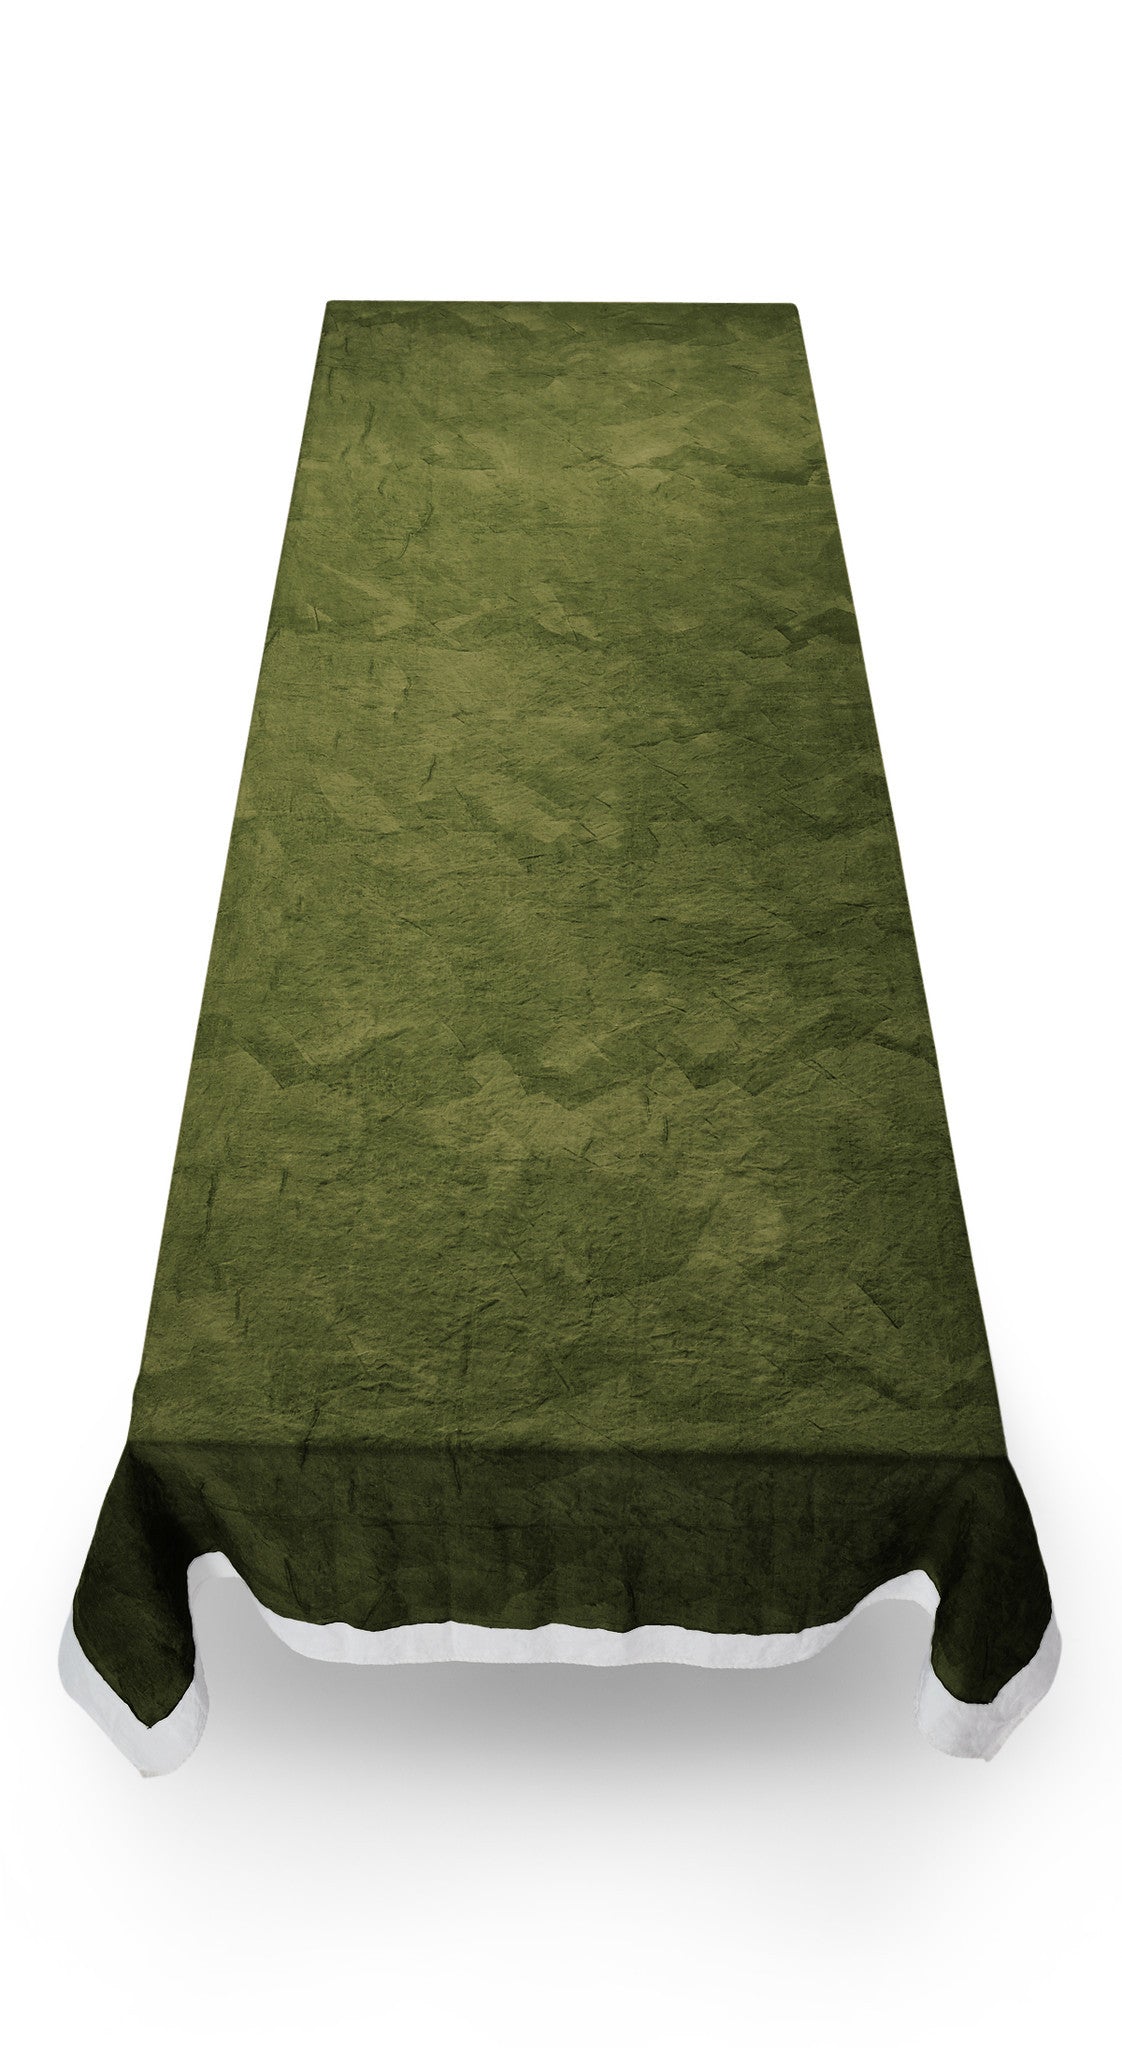 Full Field Linen Tablecloth in Avocado Green